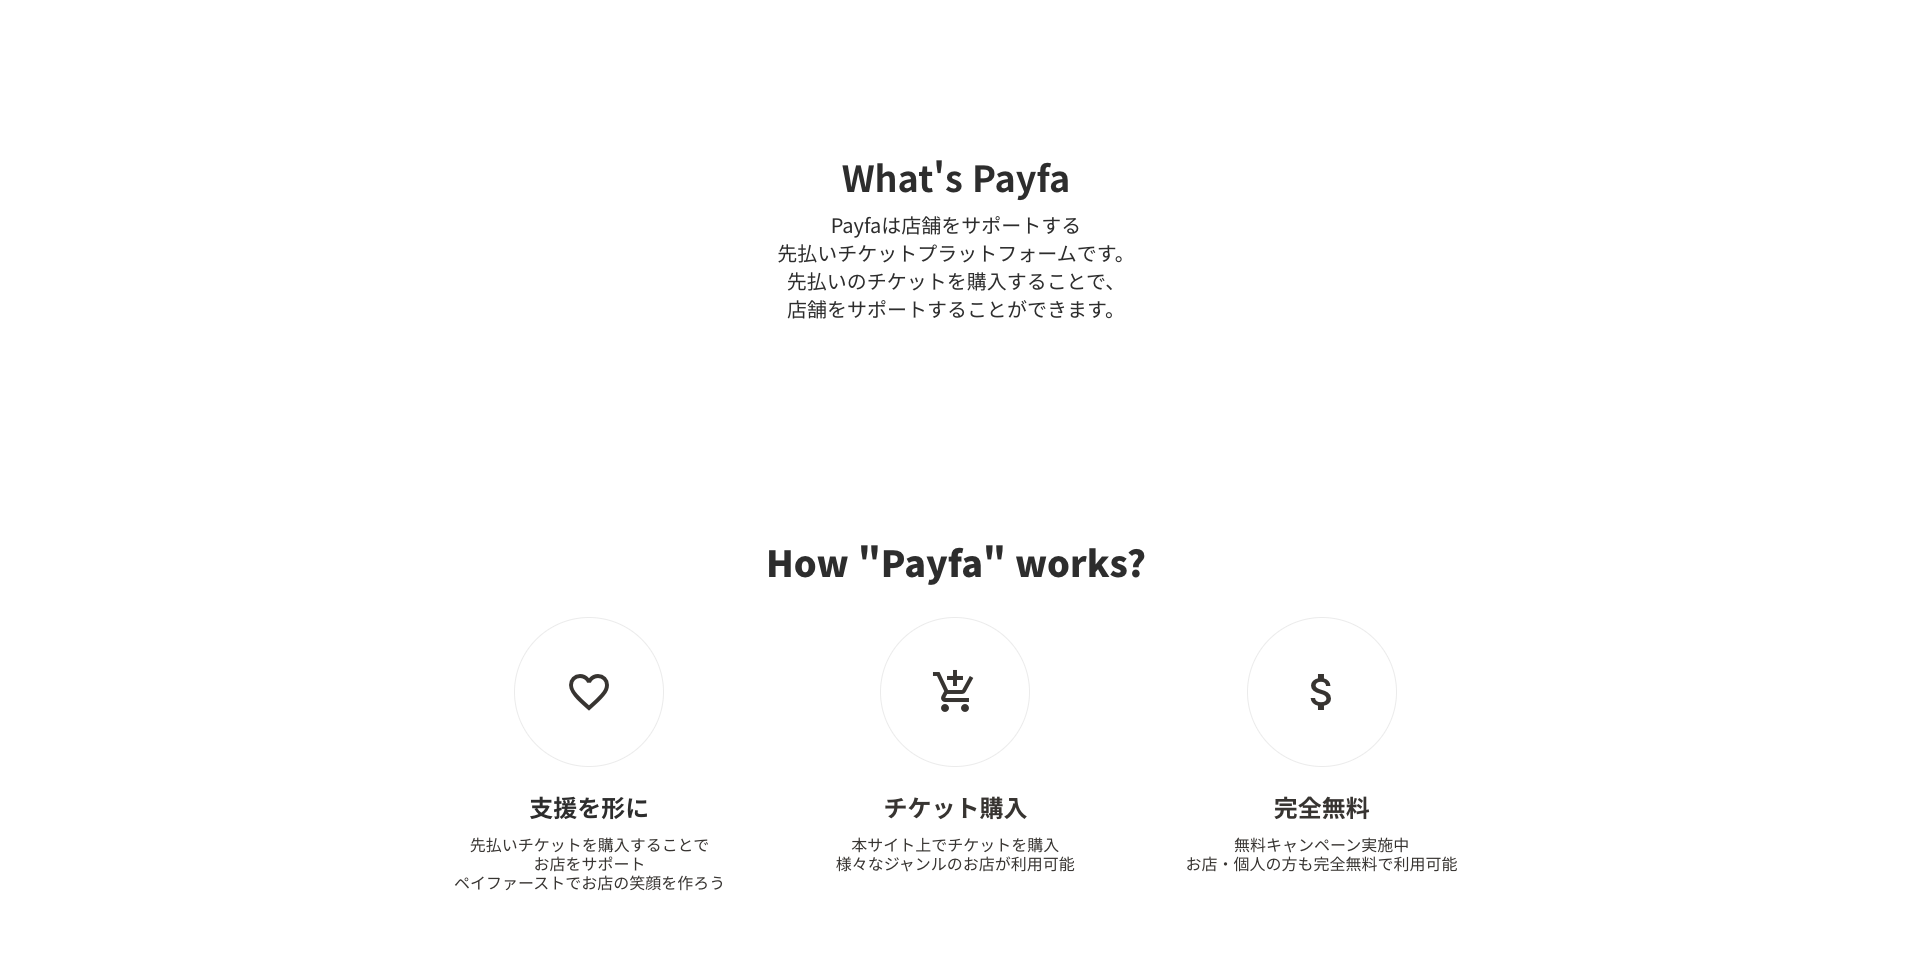 Payfa